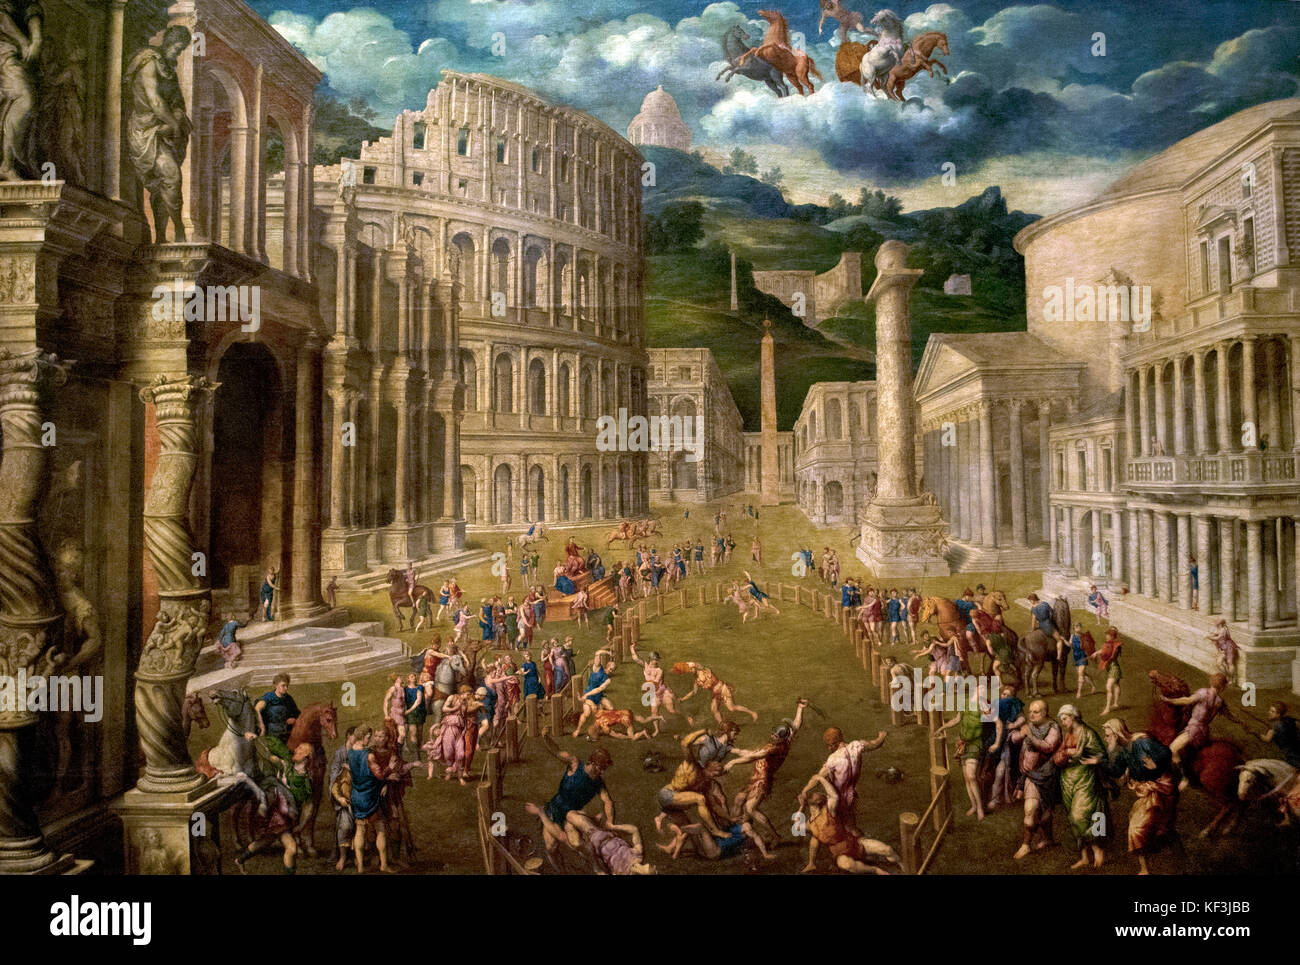 Paris bordone (1500-1571). peintre italien de la Renaissance vénitienne, c. gladiateurs combat. 1560. Kunsthistorisches Museum (musée d'histoire de l'art). Vienne. L'Autriche. Banque D'Images